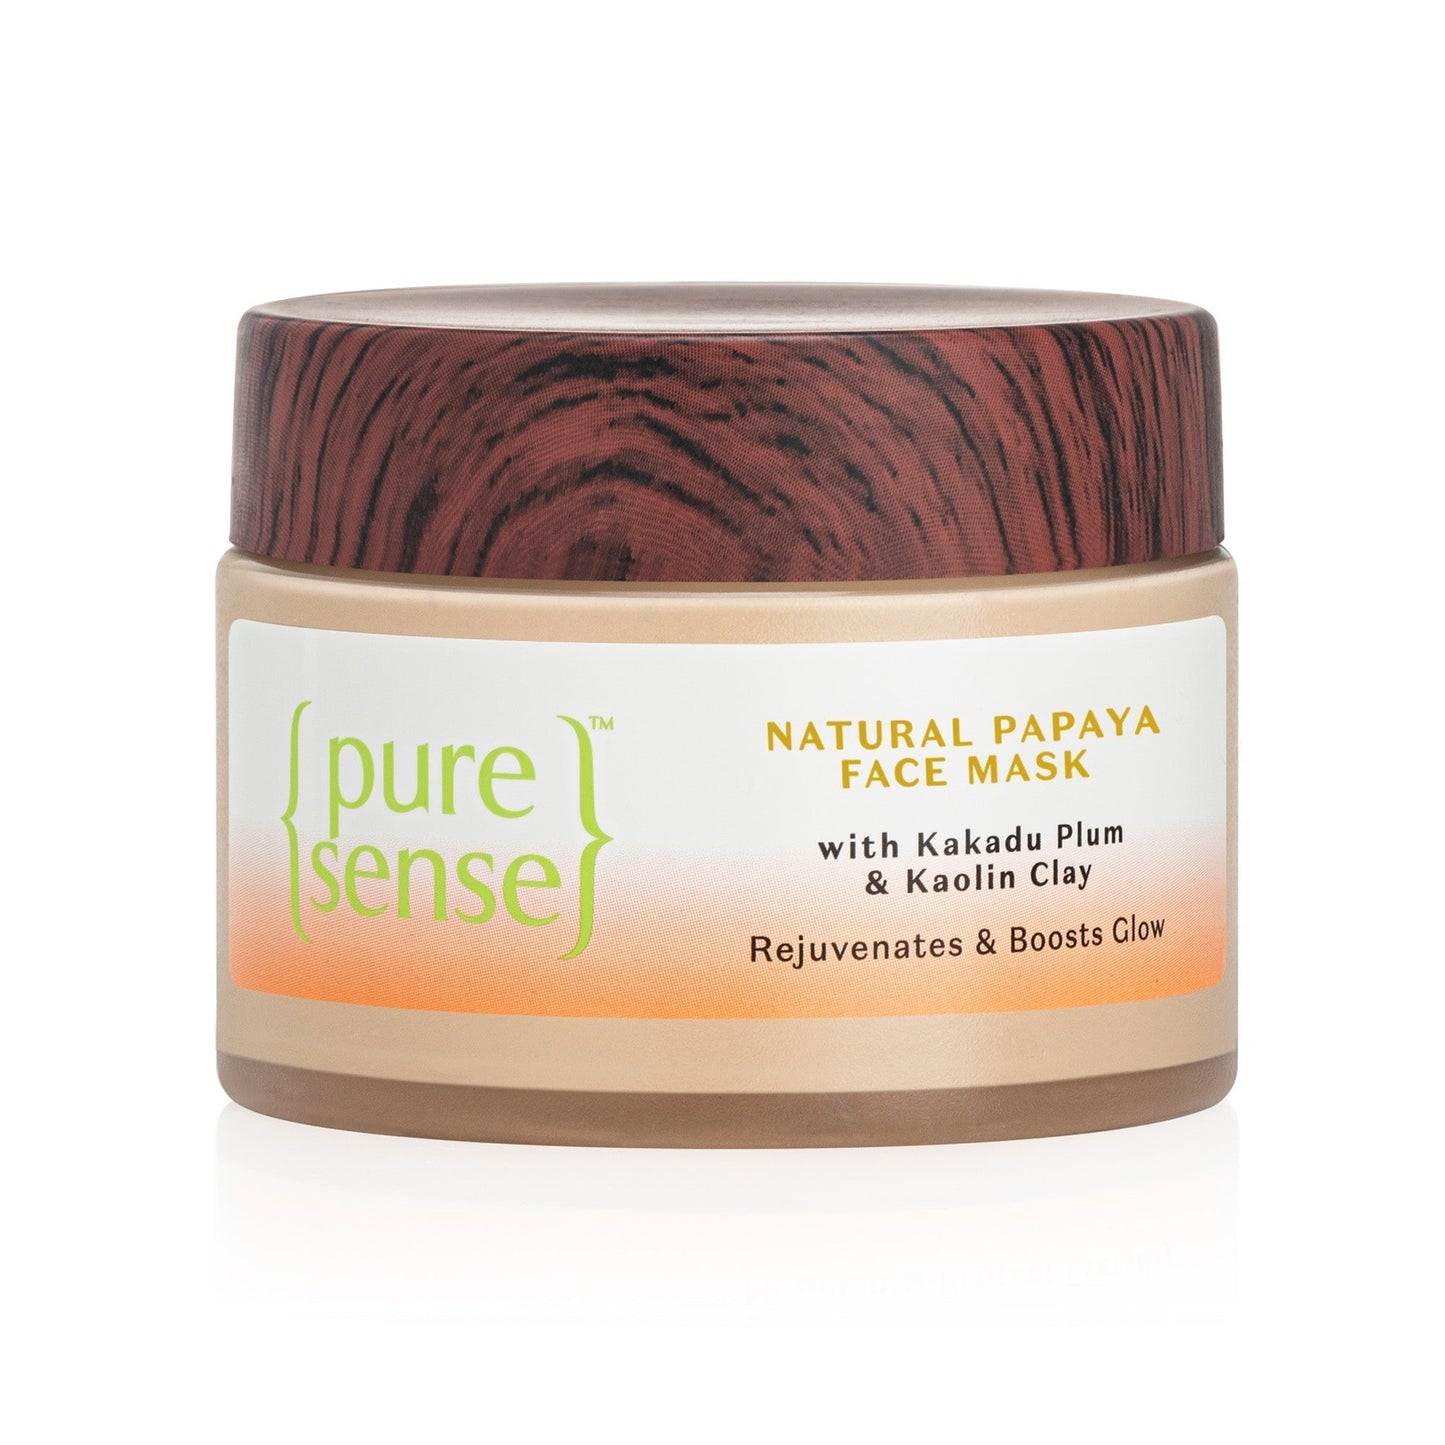 B2G2 Pure Sense Natural Papaya Face Mask -65g